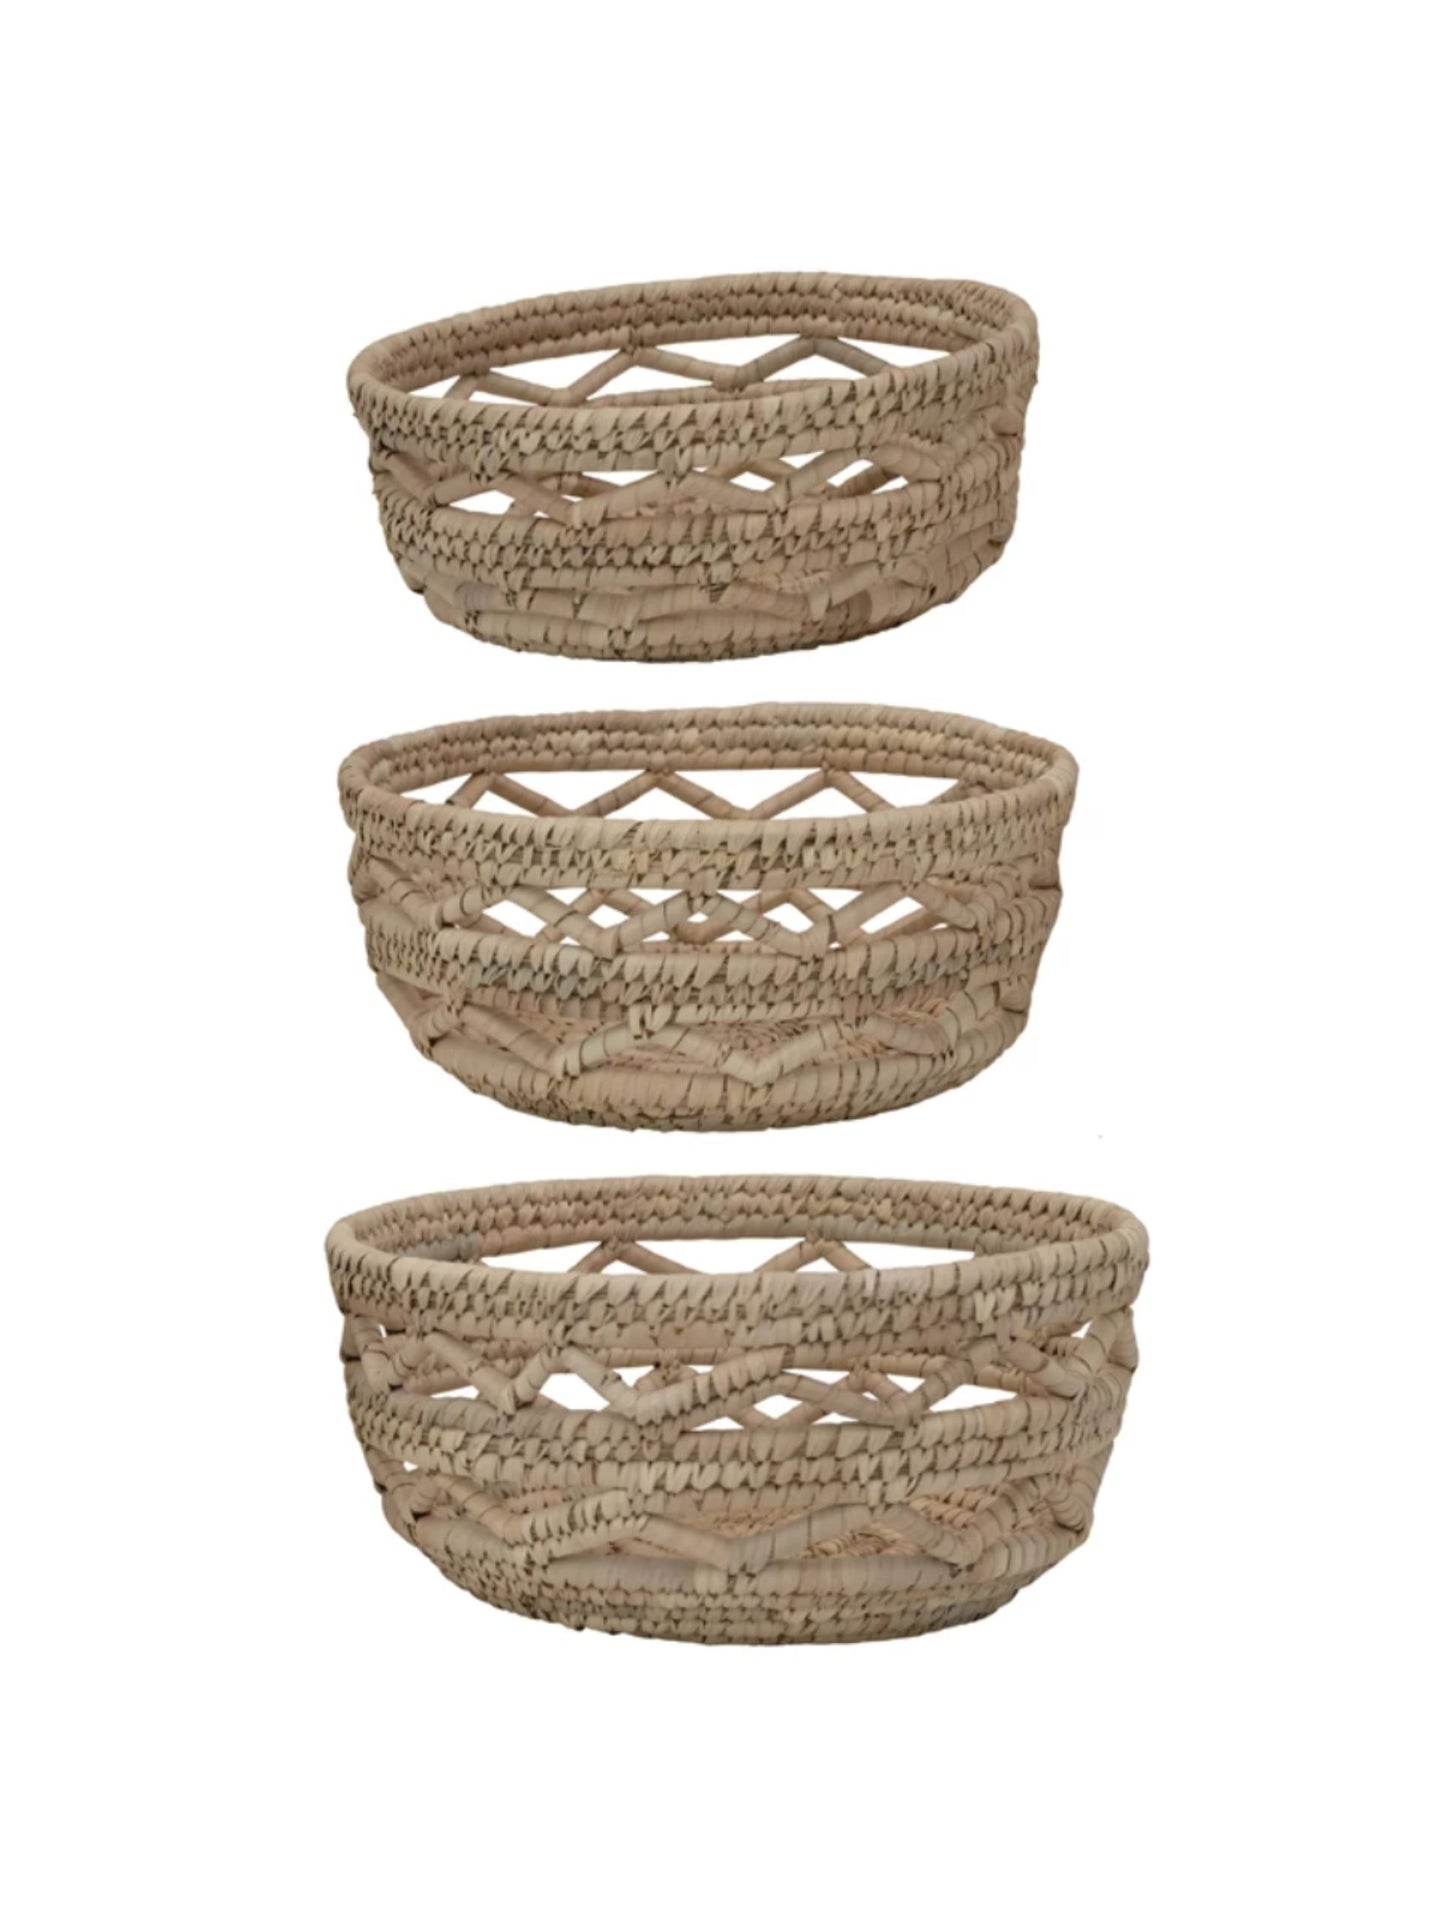 Hand-Woven Grass Baskets